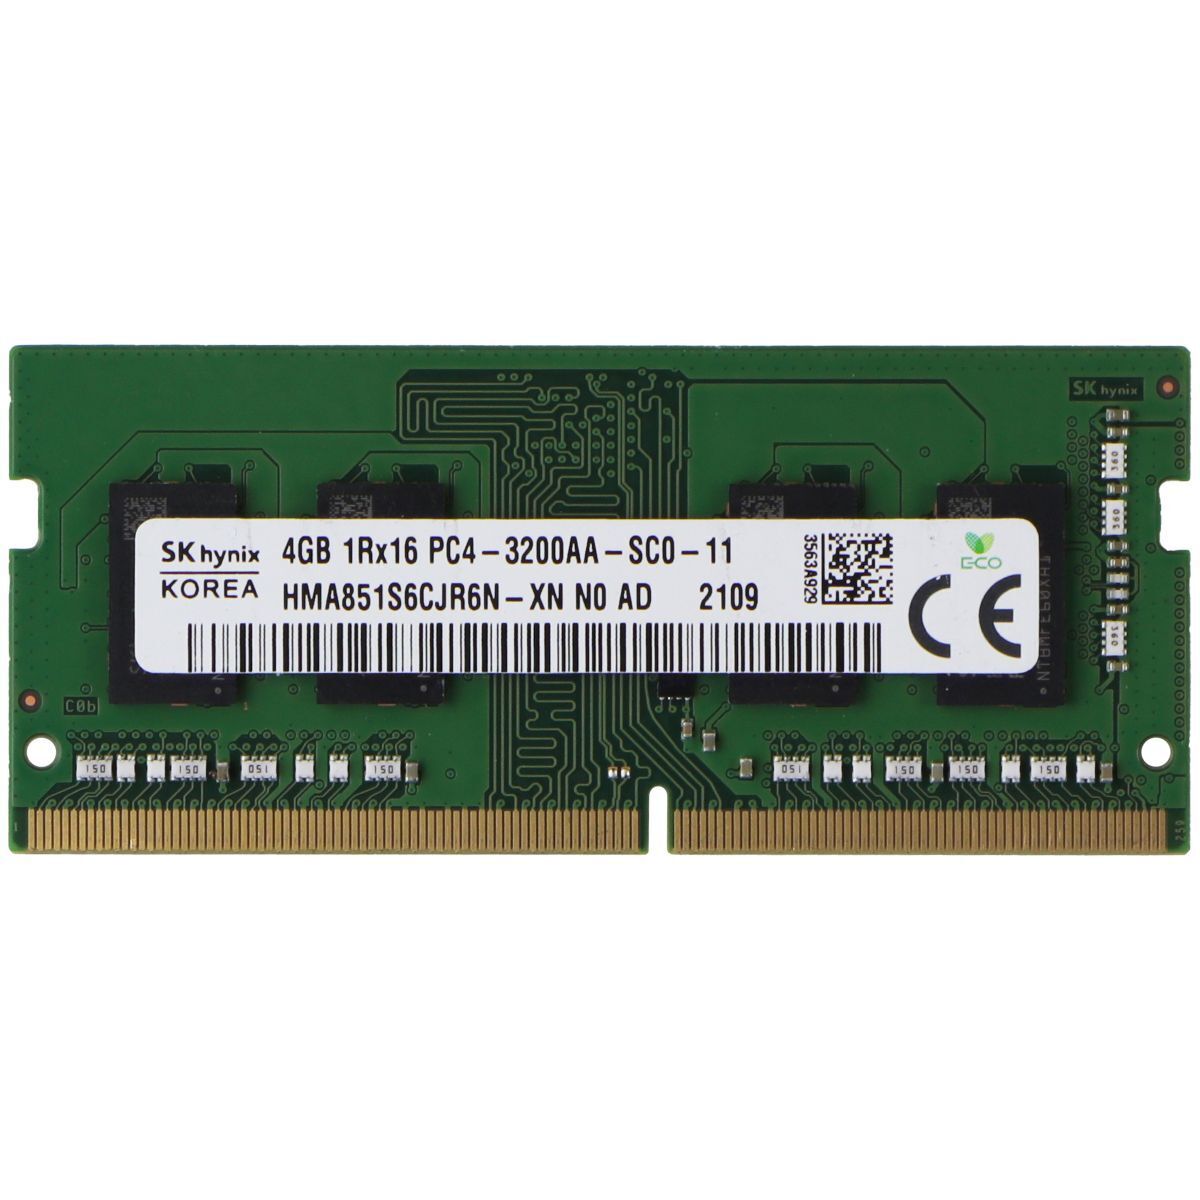 SK Hynix (4GB) DDR4 3200MHz Laptop RAM PC4-3200AA (HMA851S6CJR6N-XN N0 AC)